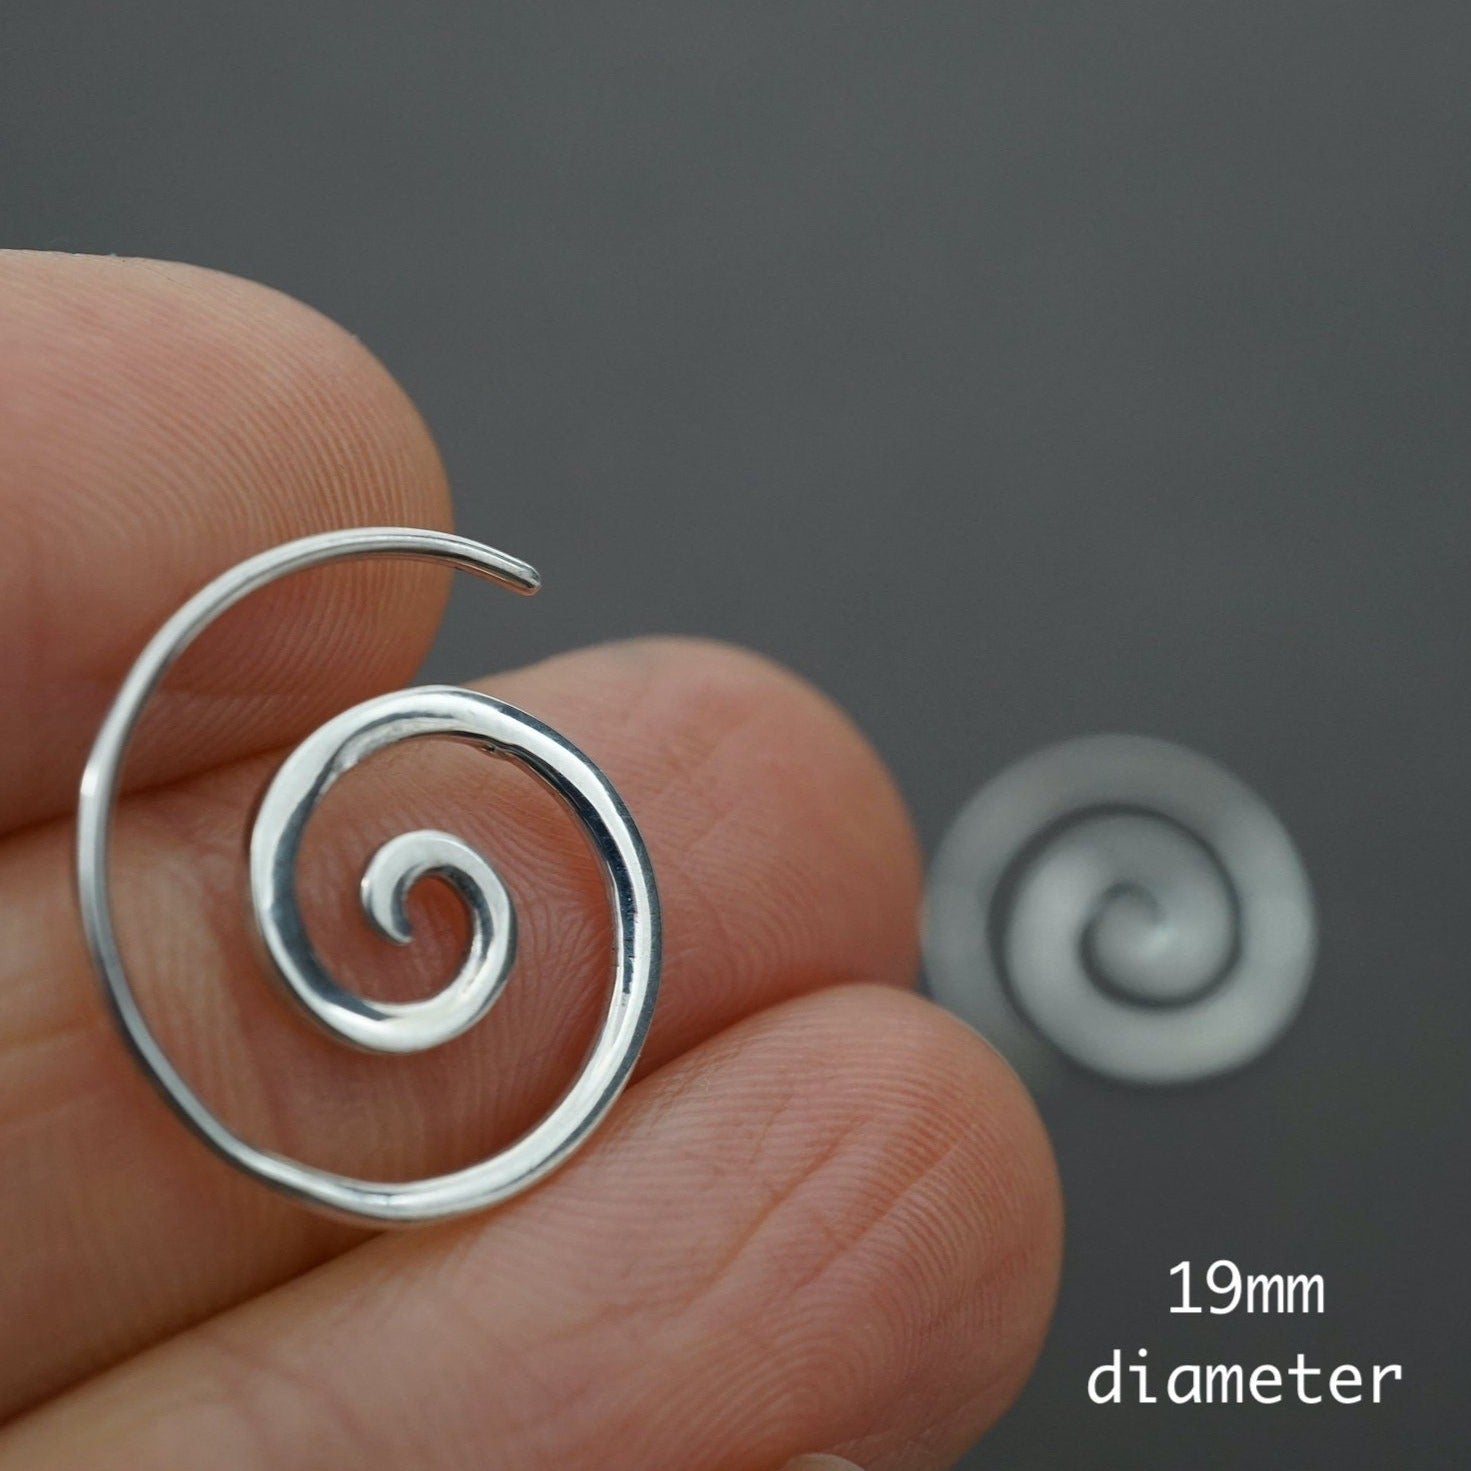 lv spiral earrings